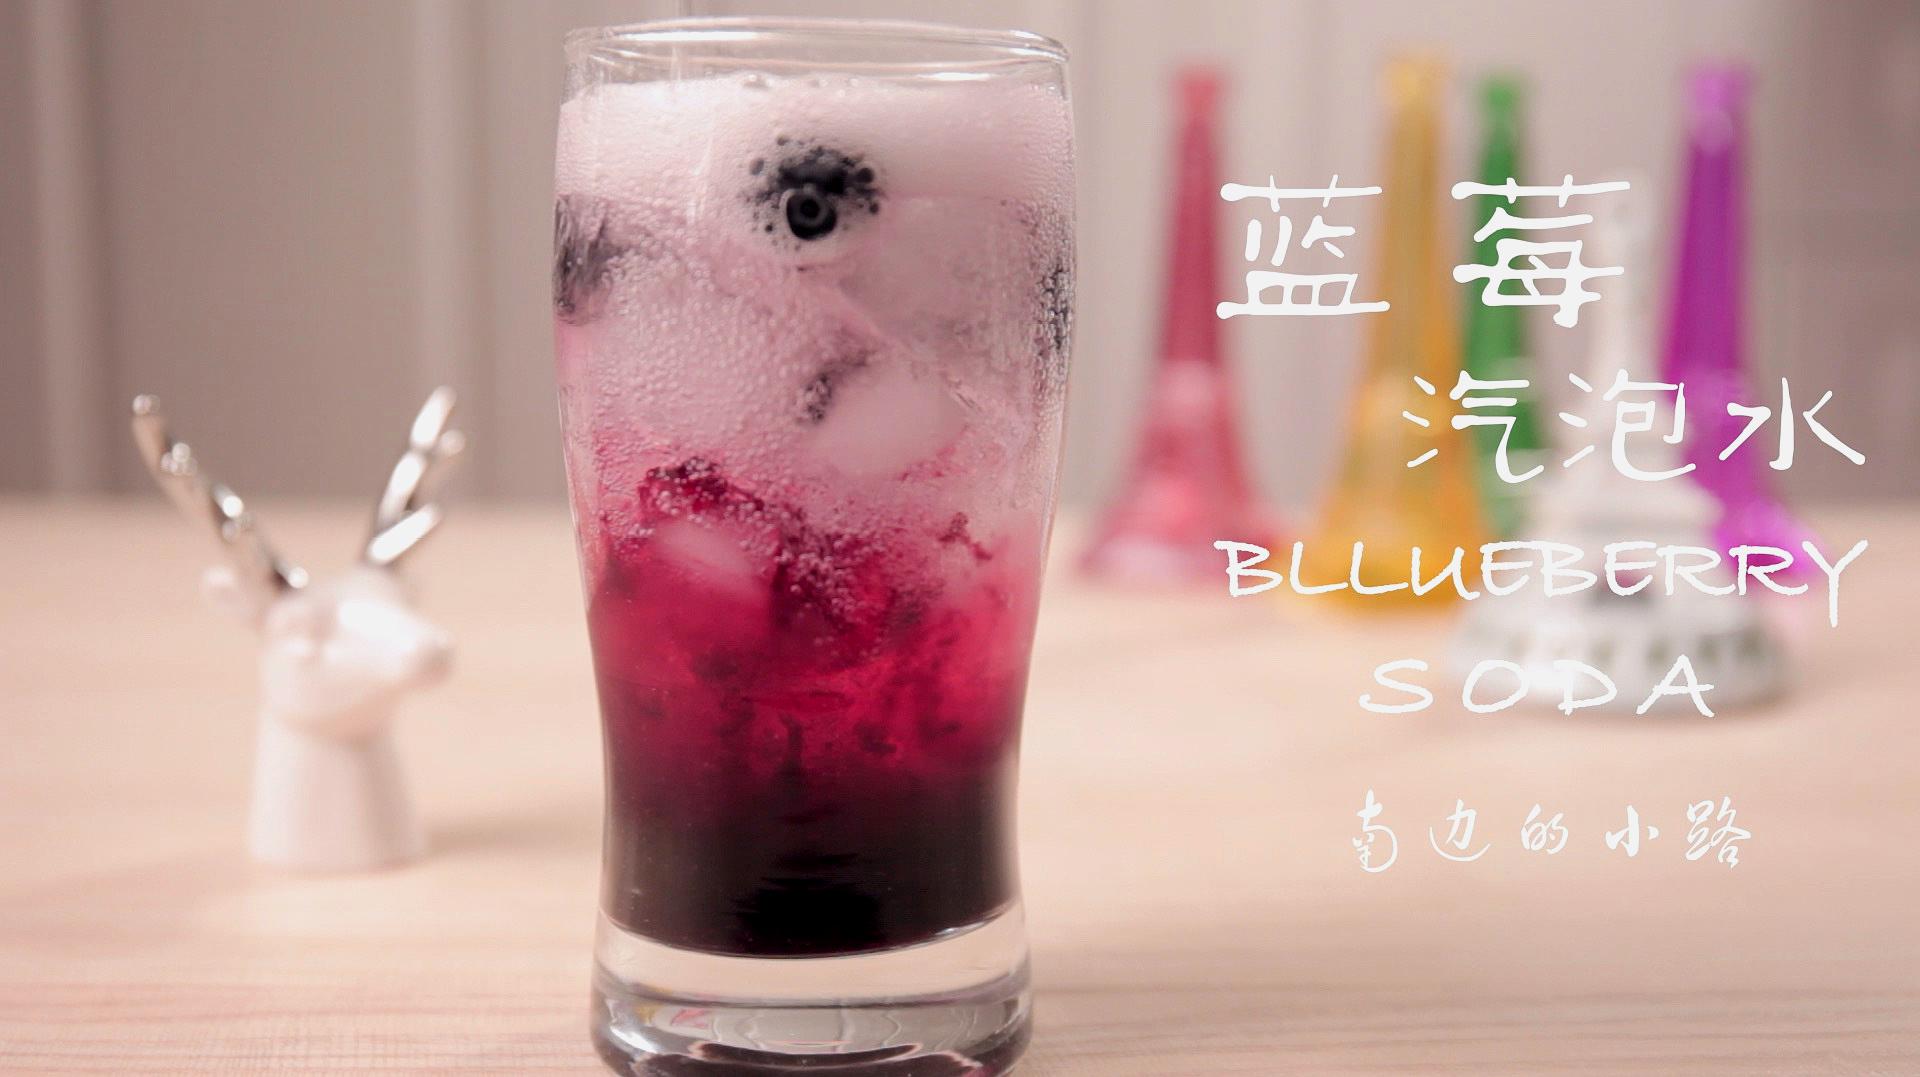 蓝莓气泡水,为炎炎夏日准备解暑利器